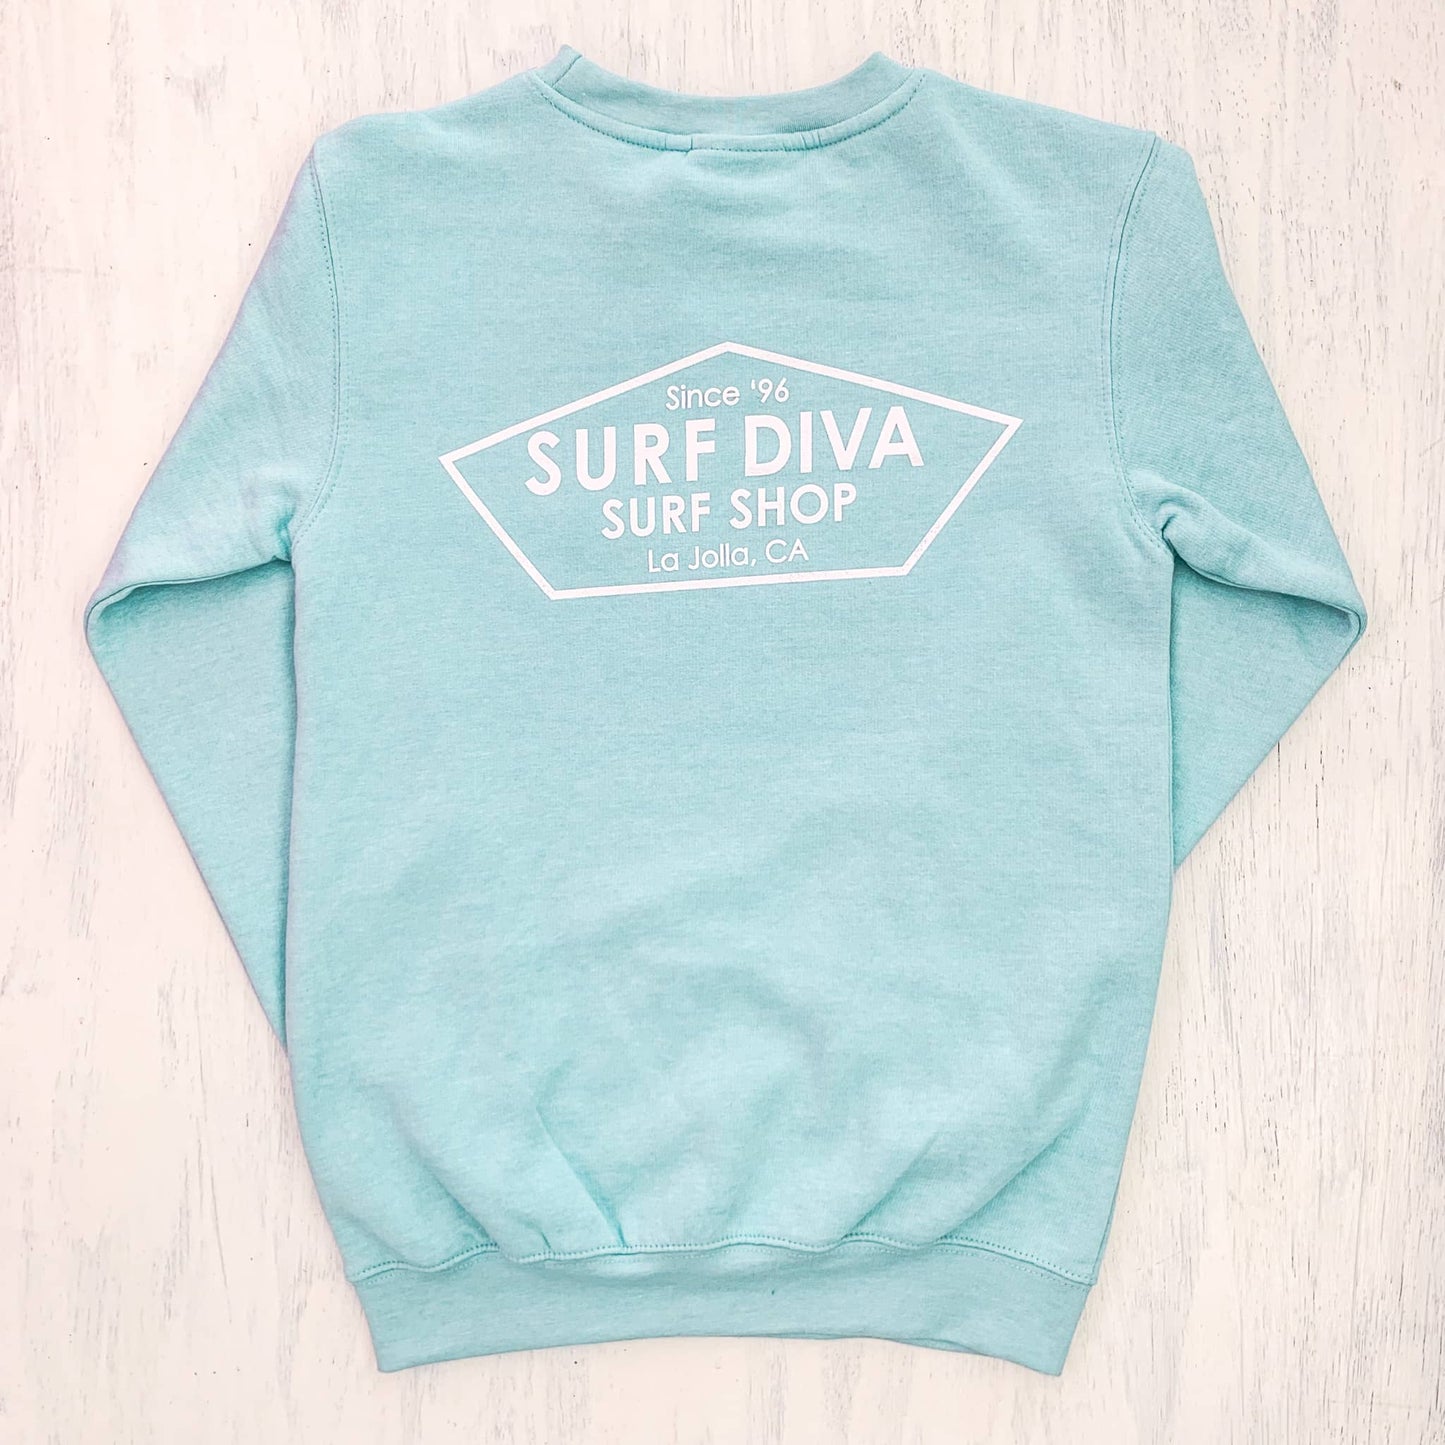 Surf Diva Surf Shop - CREWNECK SKYE BLUE